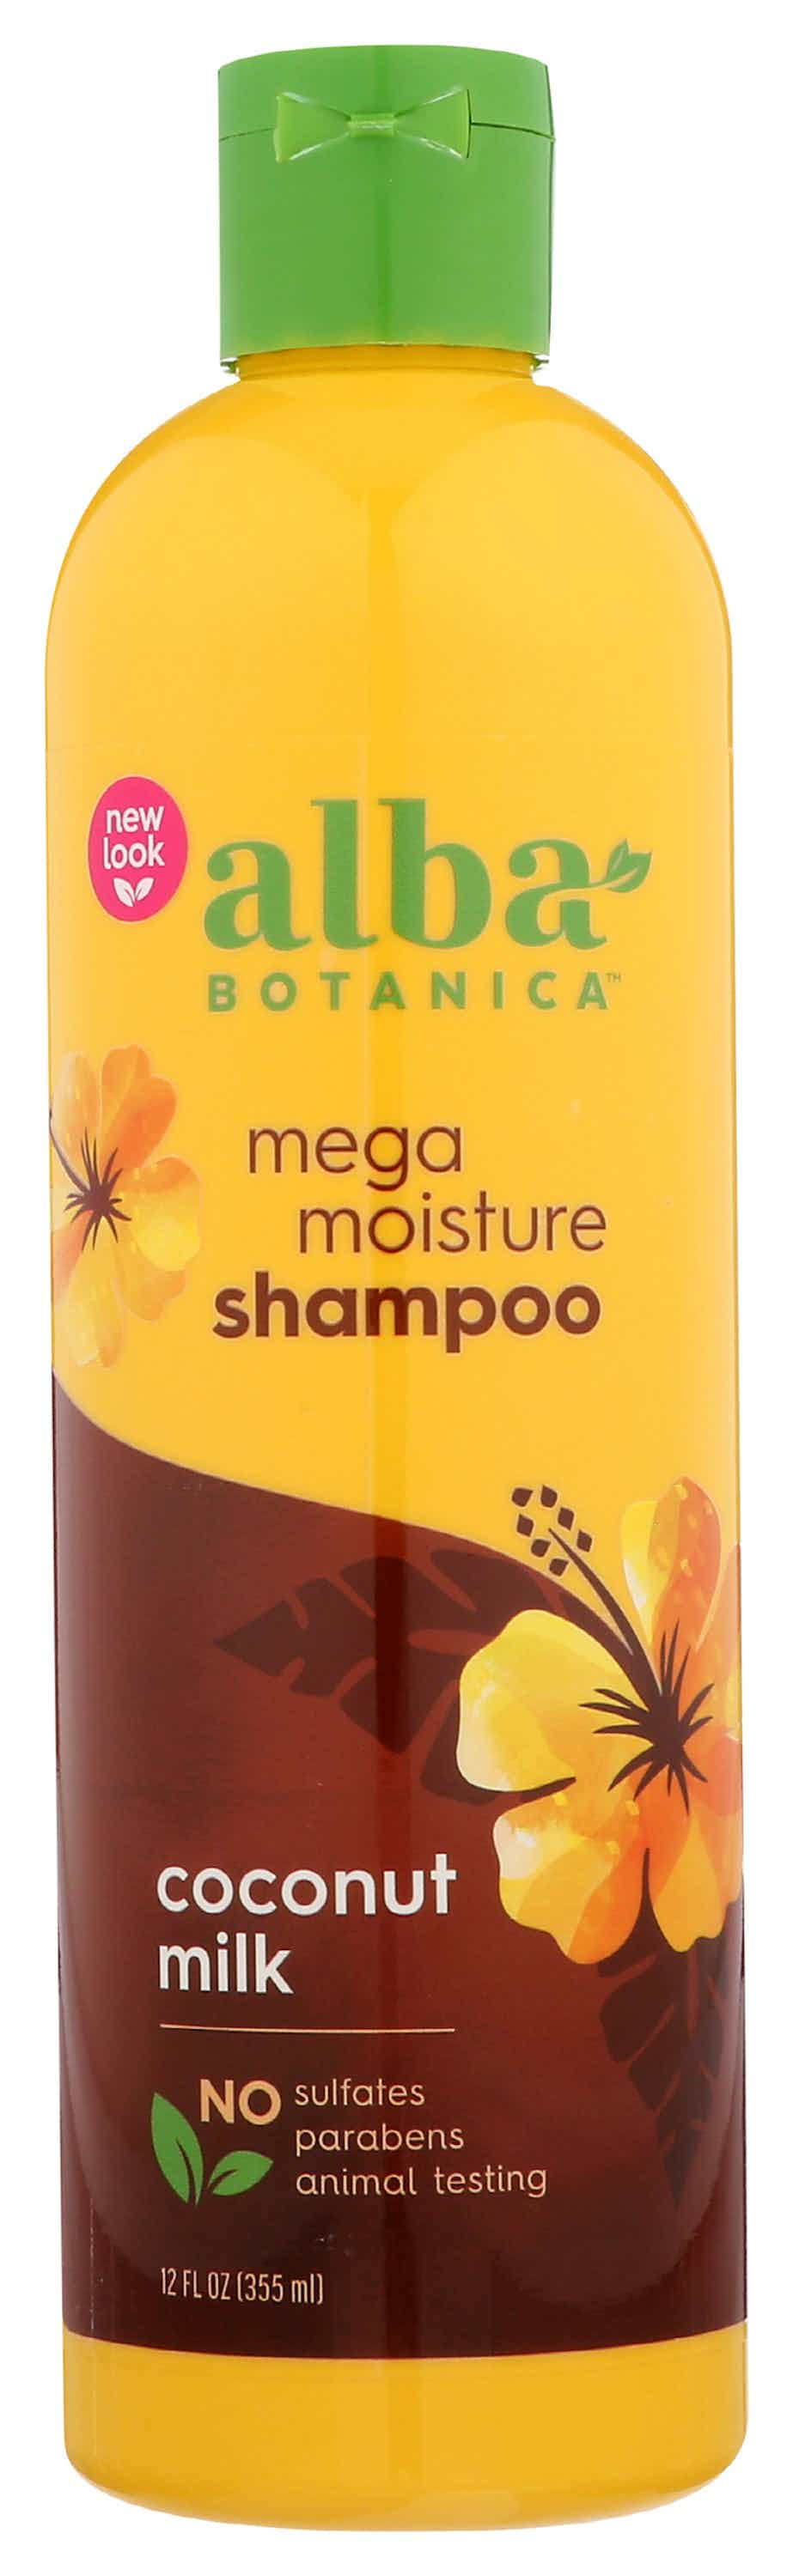 Alba Botanica Moisture Shampoo, Coconut Milk